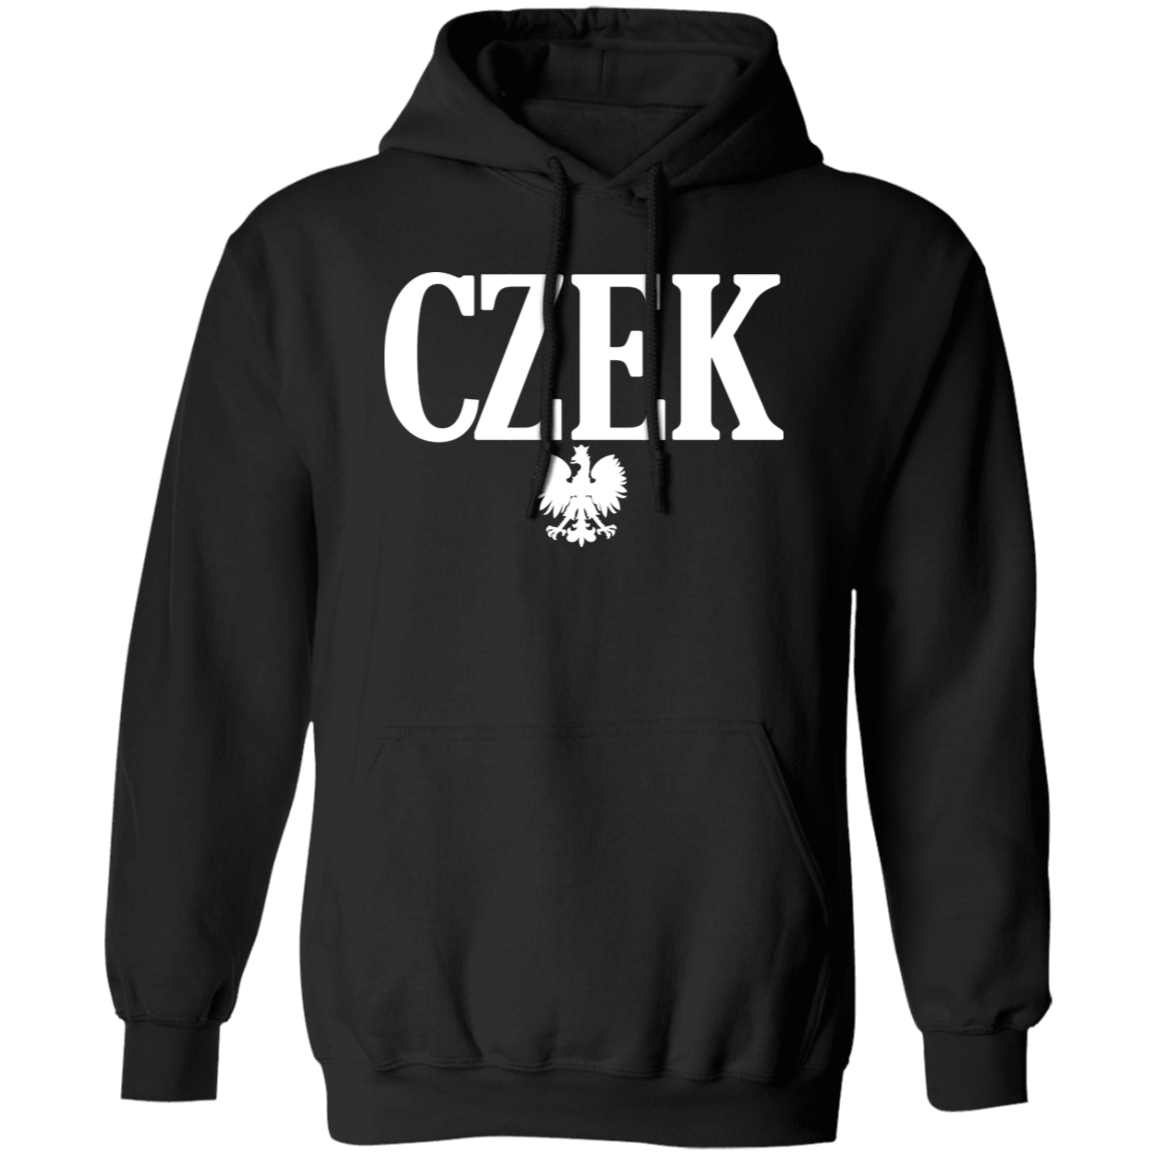 CZEK Polish Surname Ending Apparel CustomCat G185 Pullover Hoodie Black S